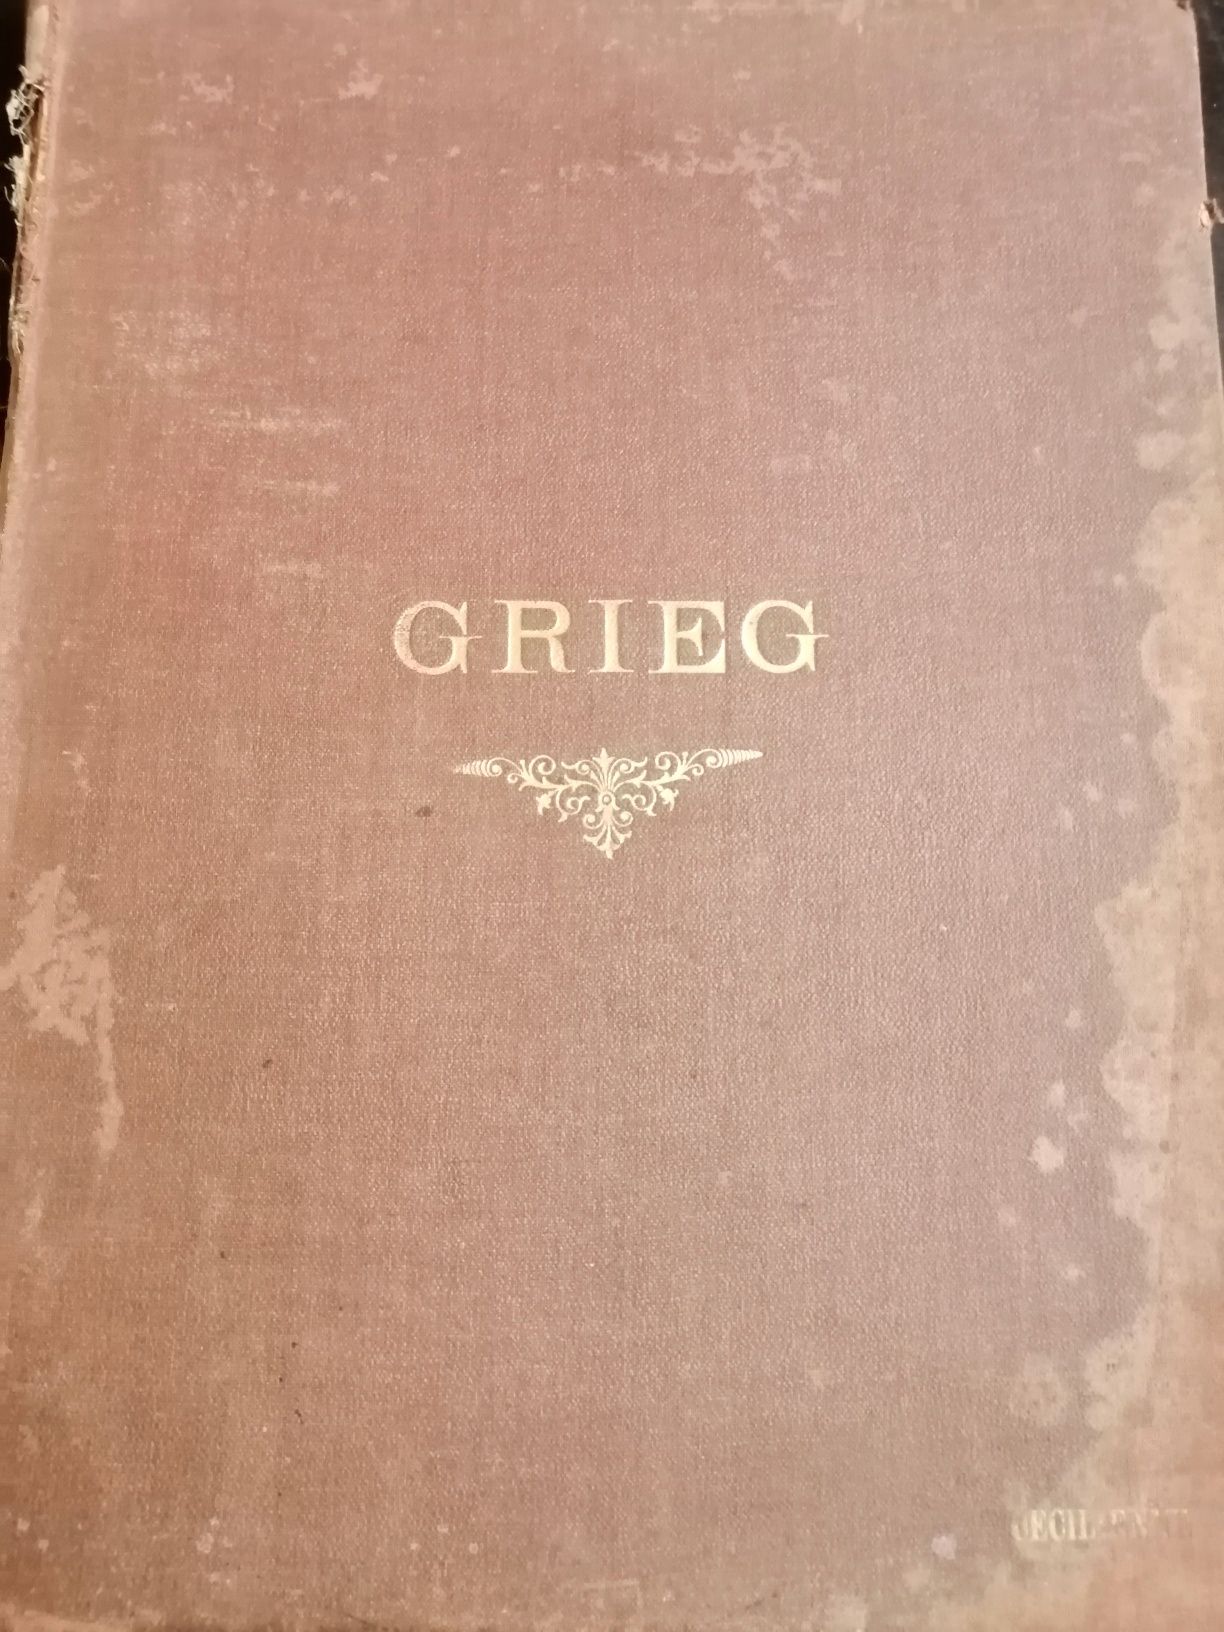 Partituri foarte vechi Edvard Grieg